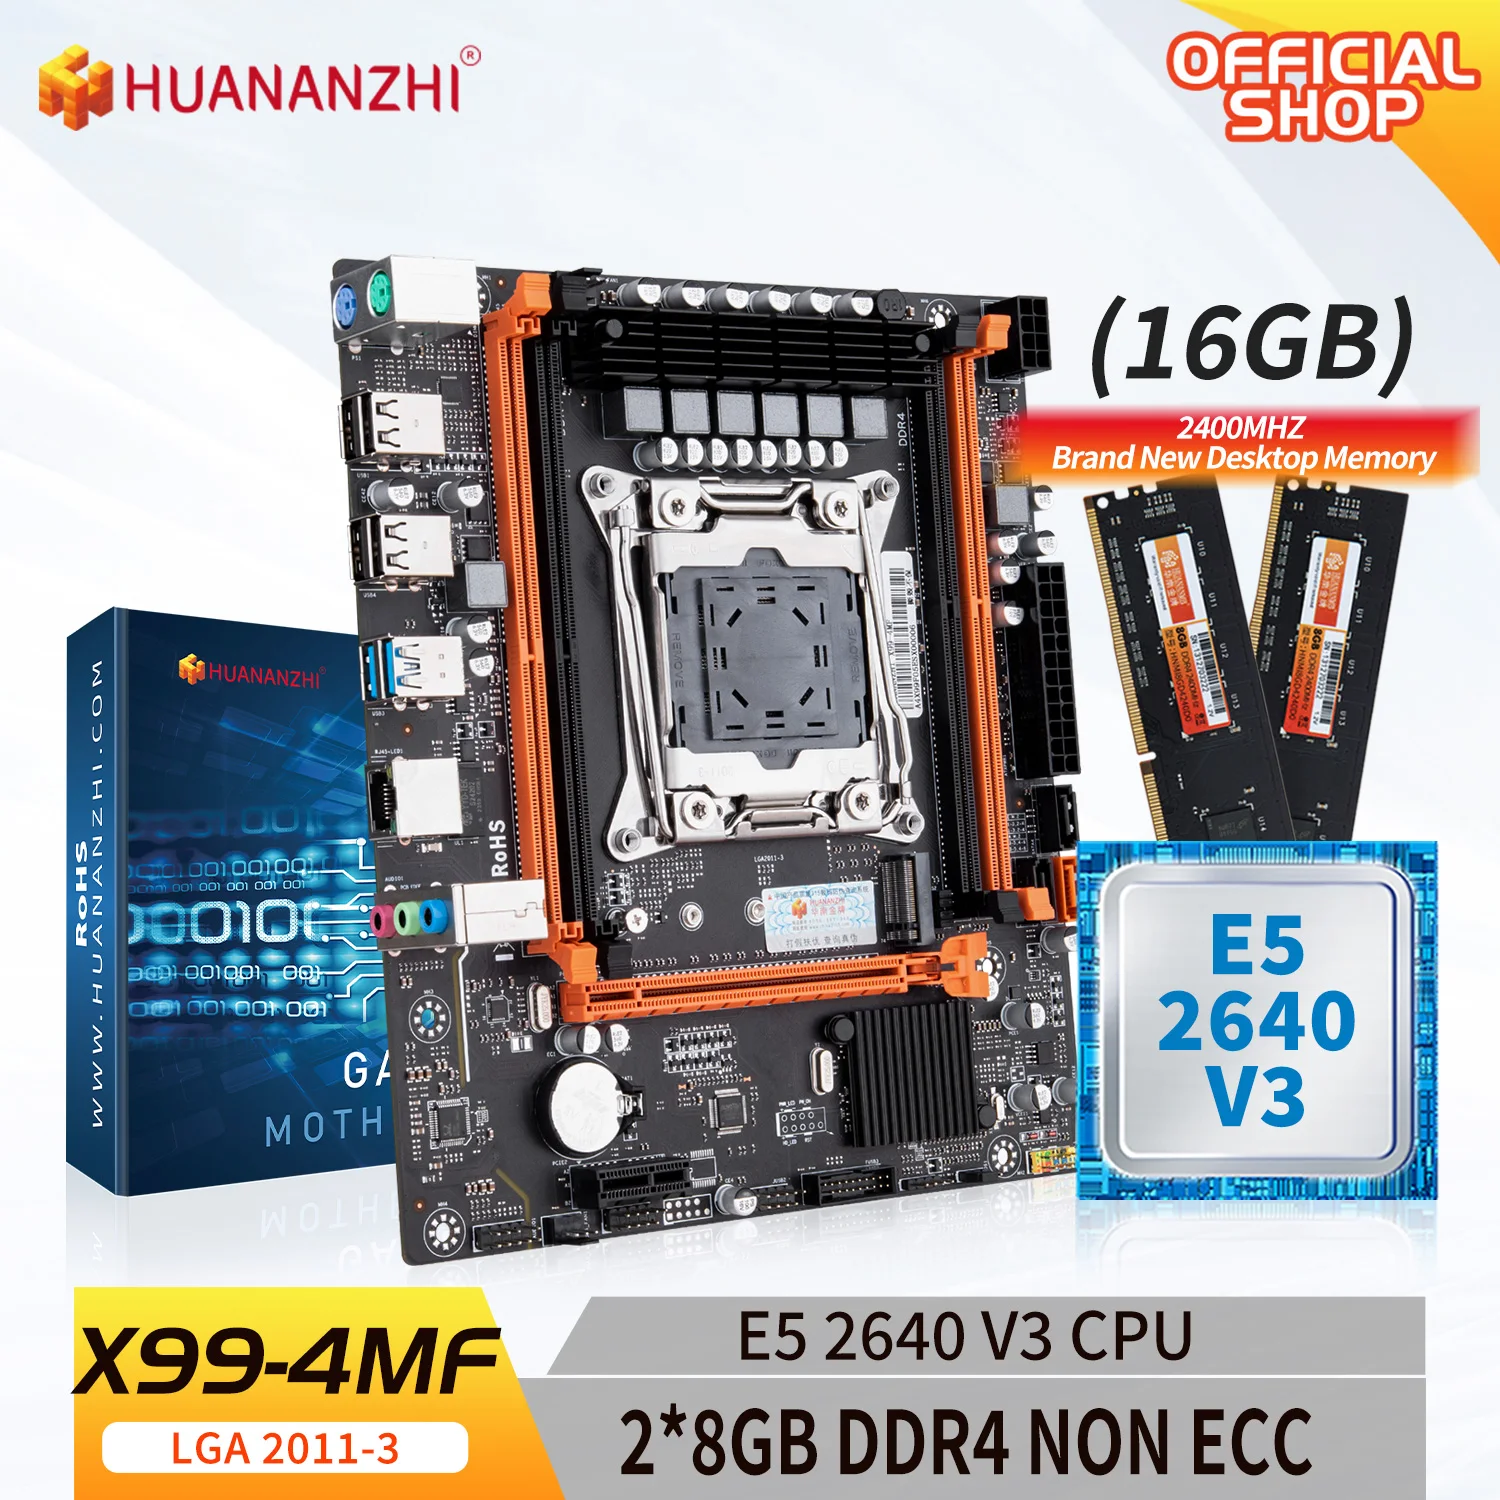 

HUANANZHI X99 4MF LGA 2011-3 XEON X99 материнская плата с Intel E5 2640 v3 с 2*8G DDR4 NON-ECC память комбинированный комплект